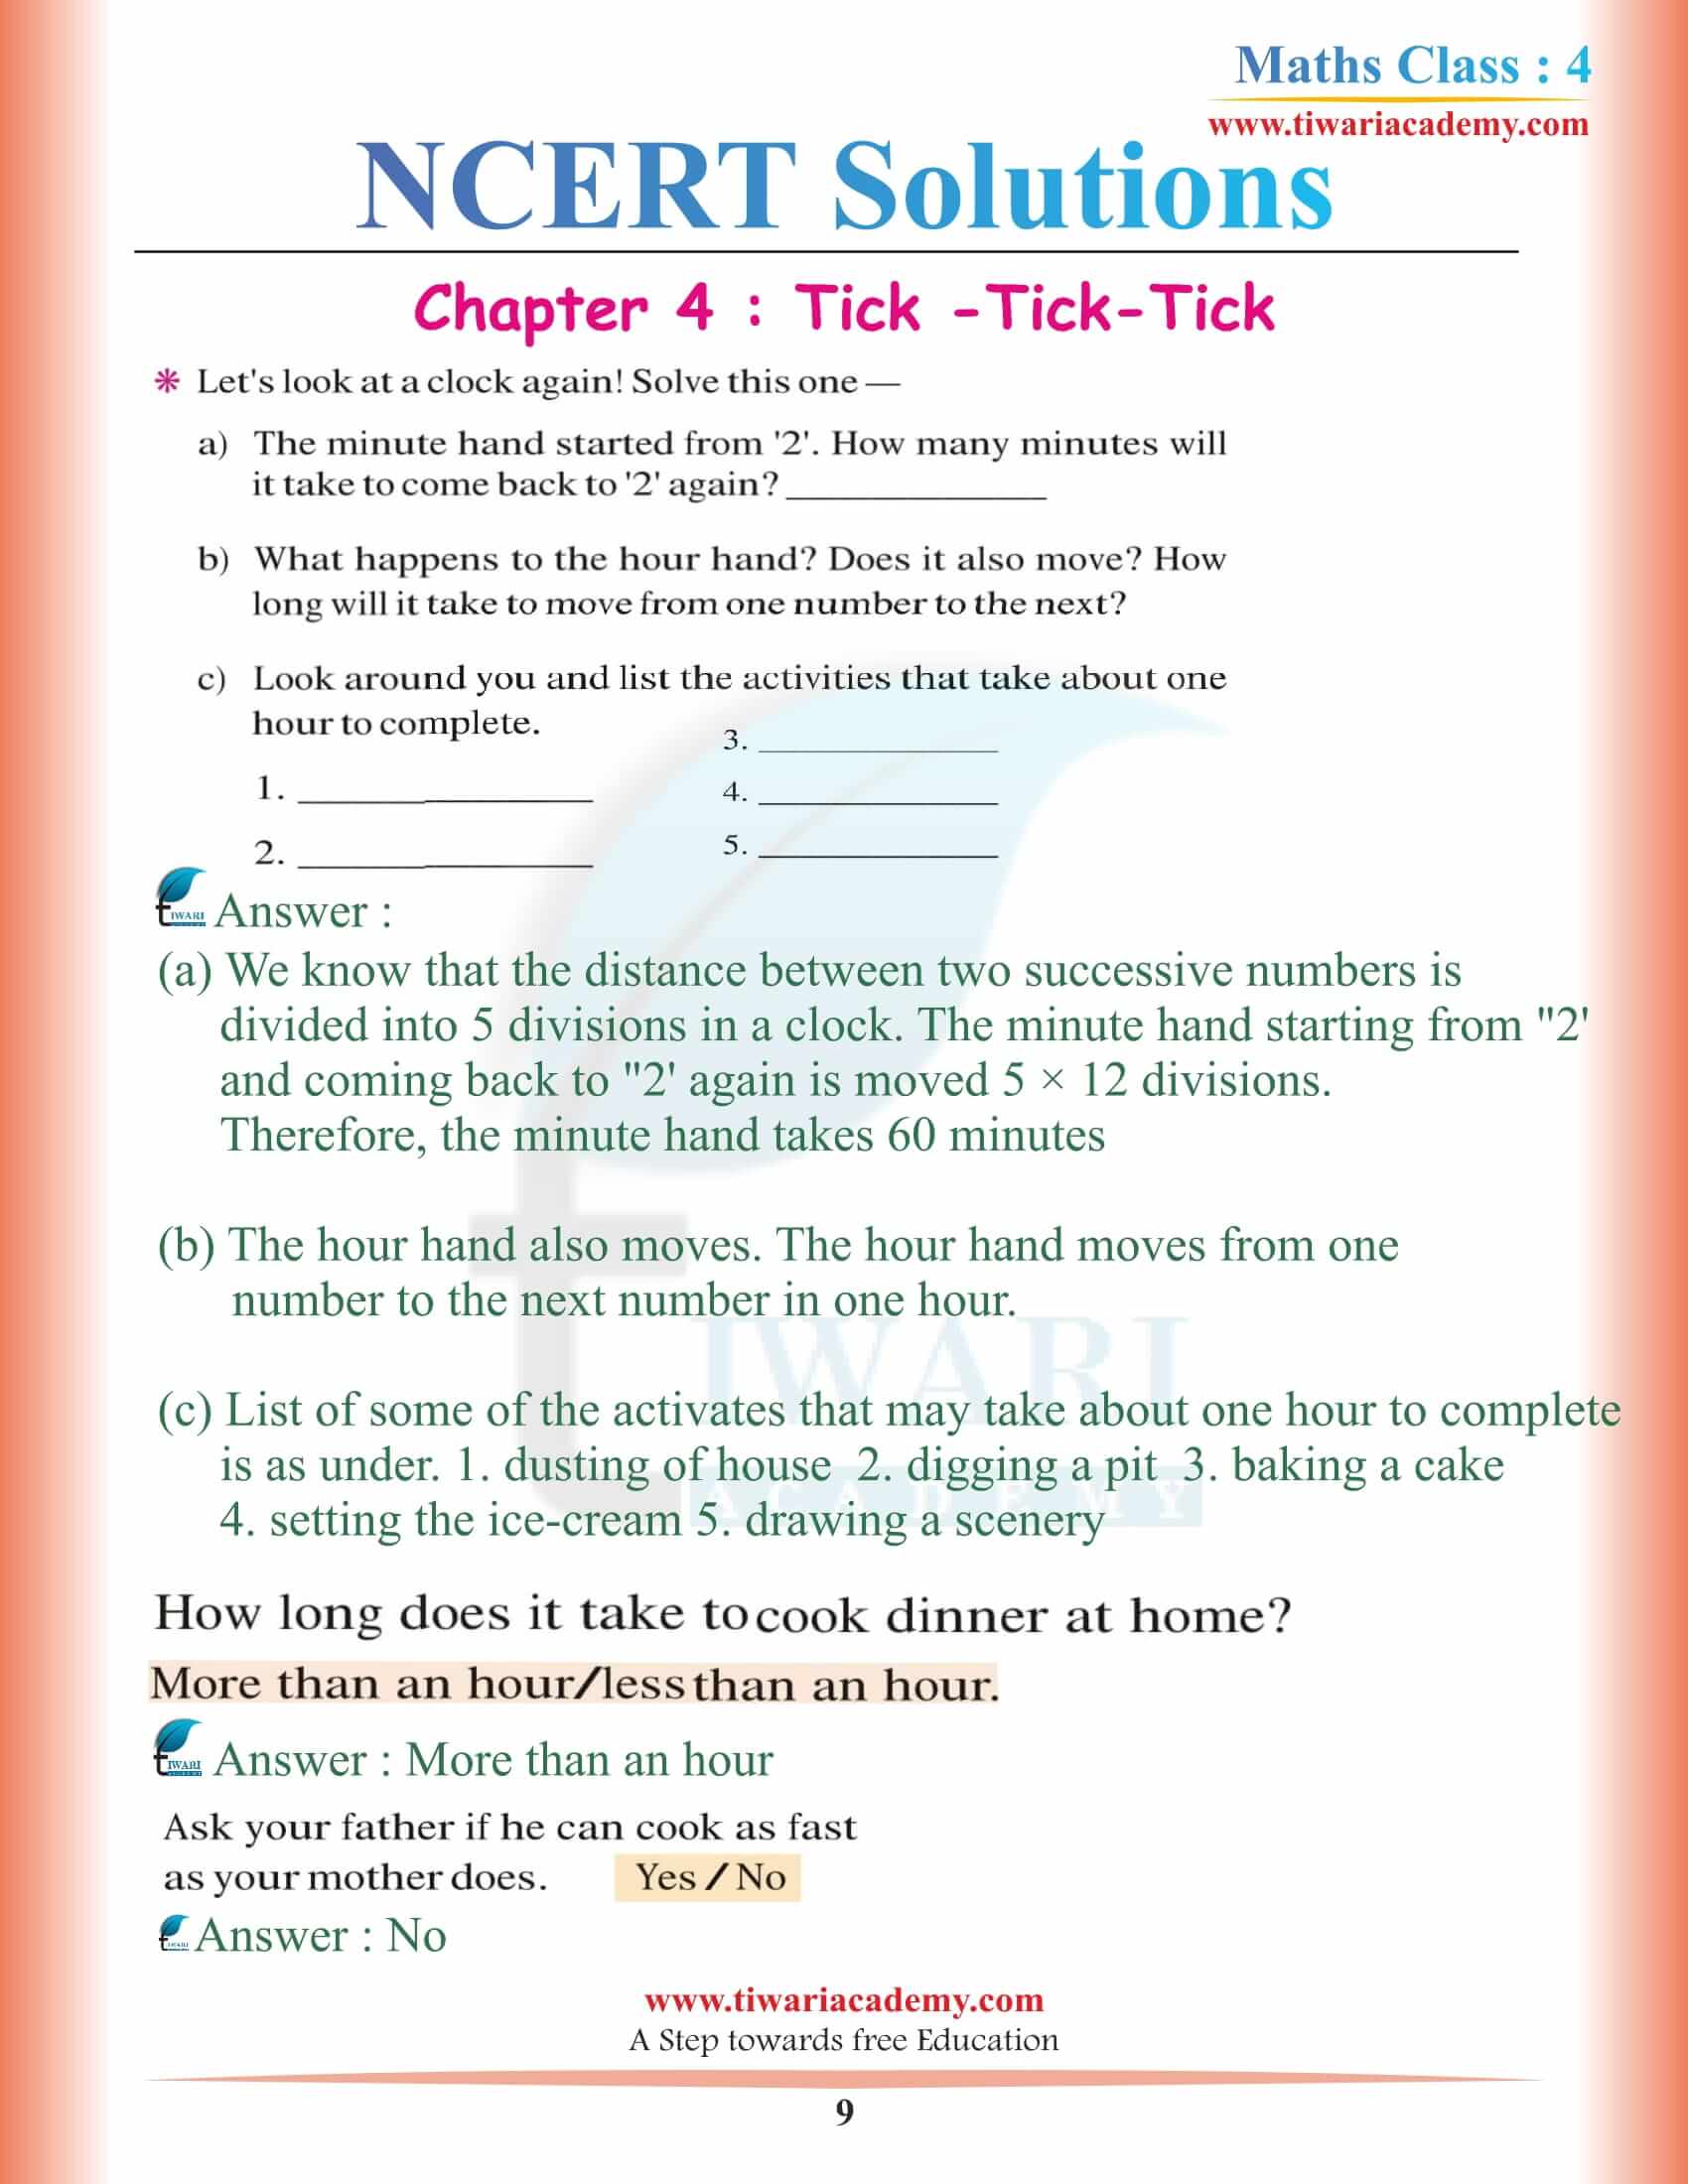 Class 4 Maths NCERT Chapter 4 Solutions